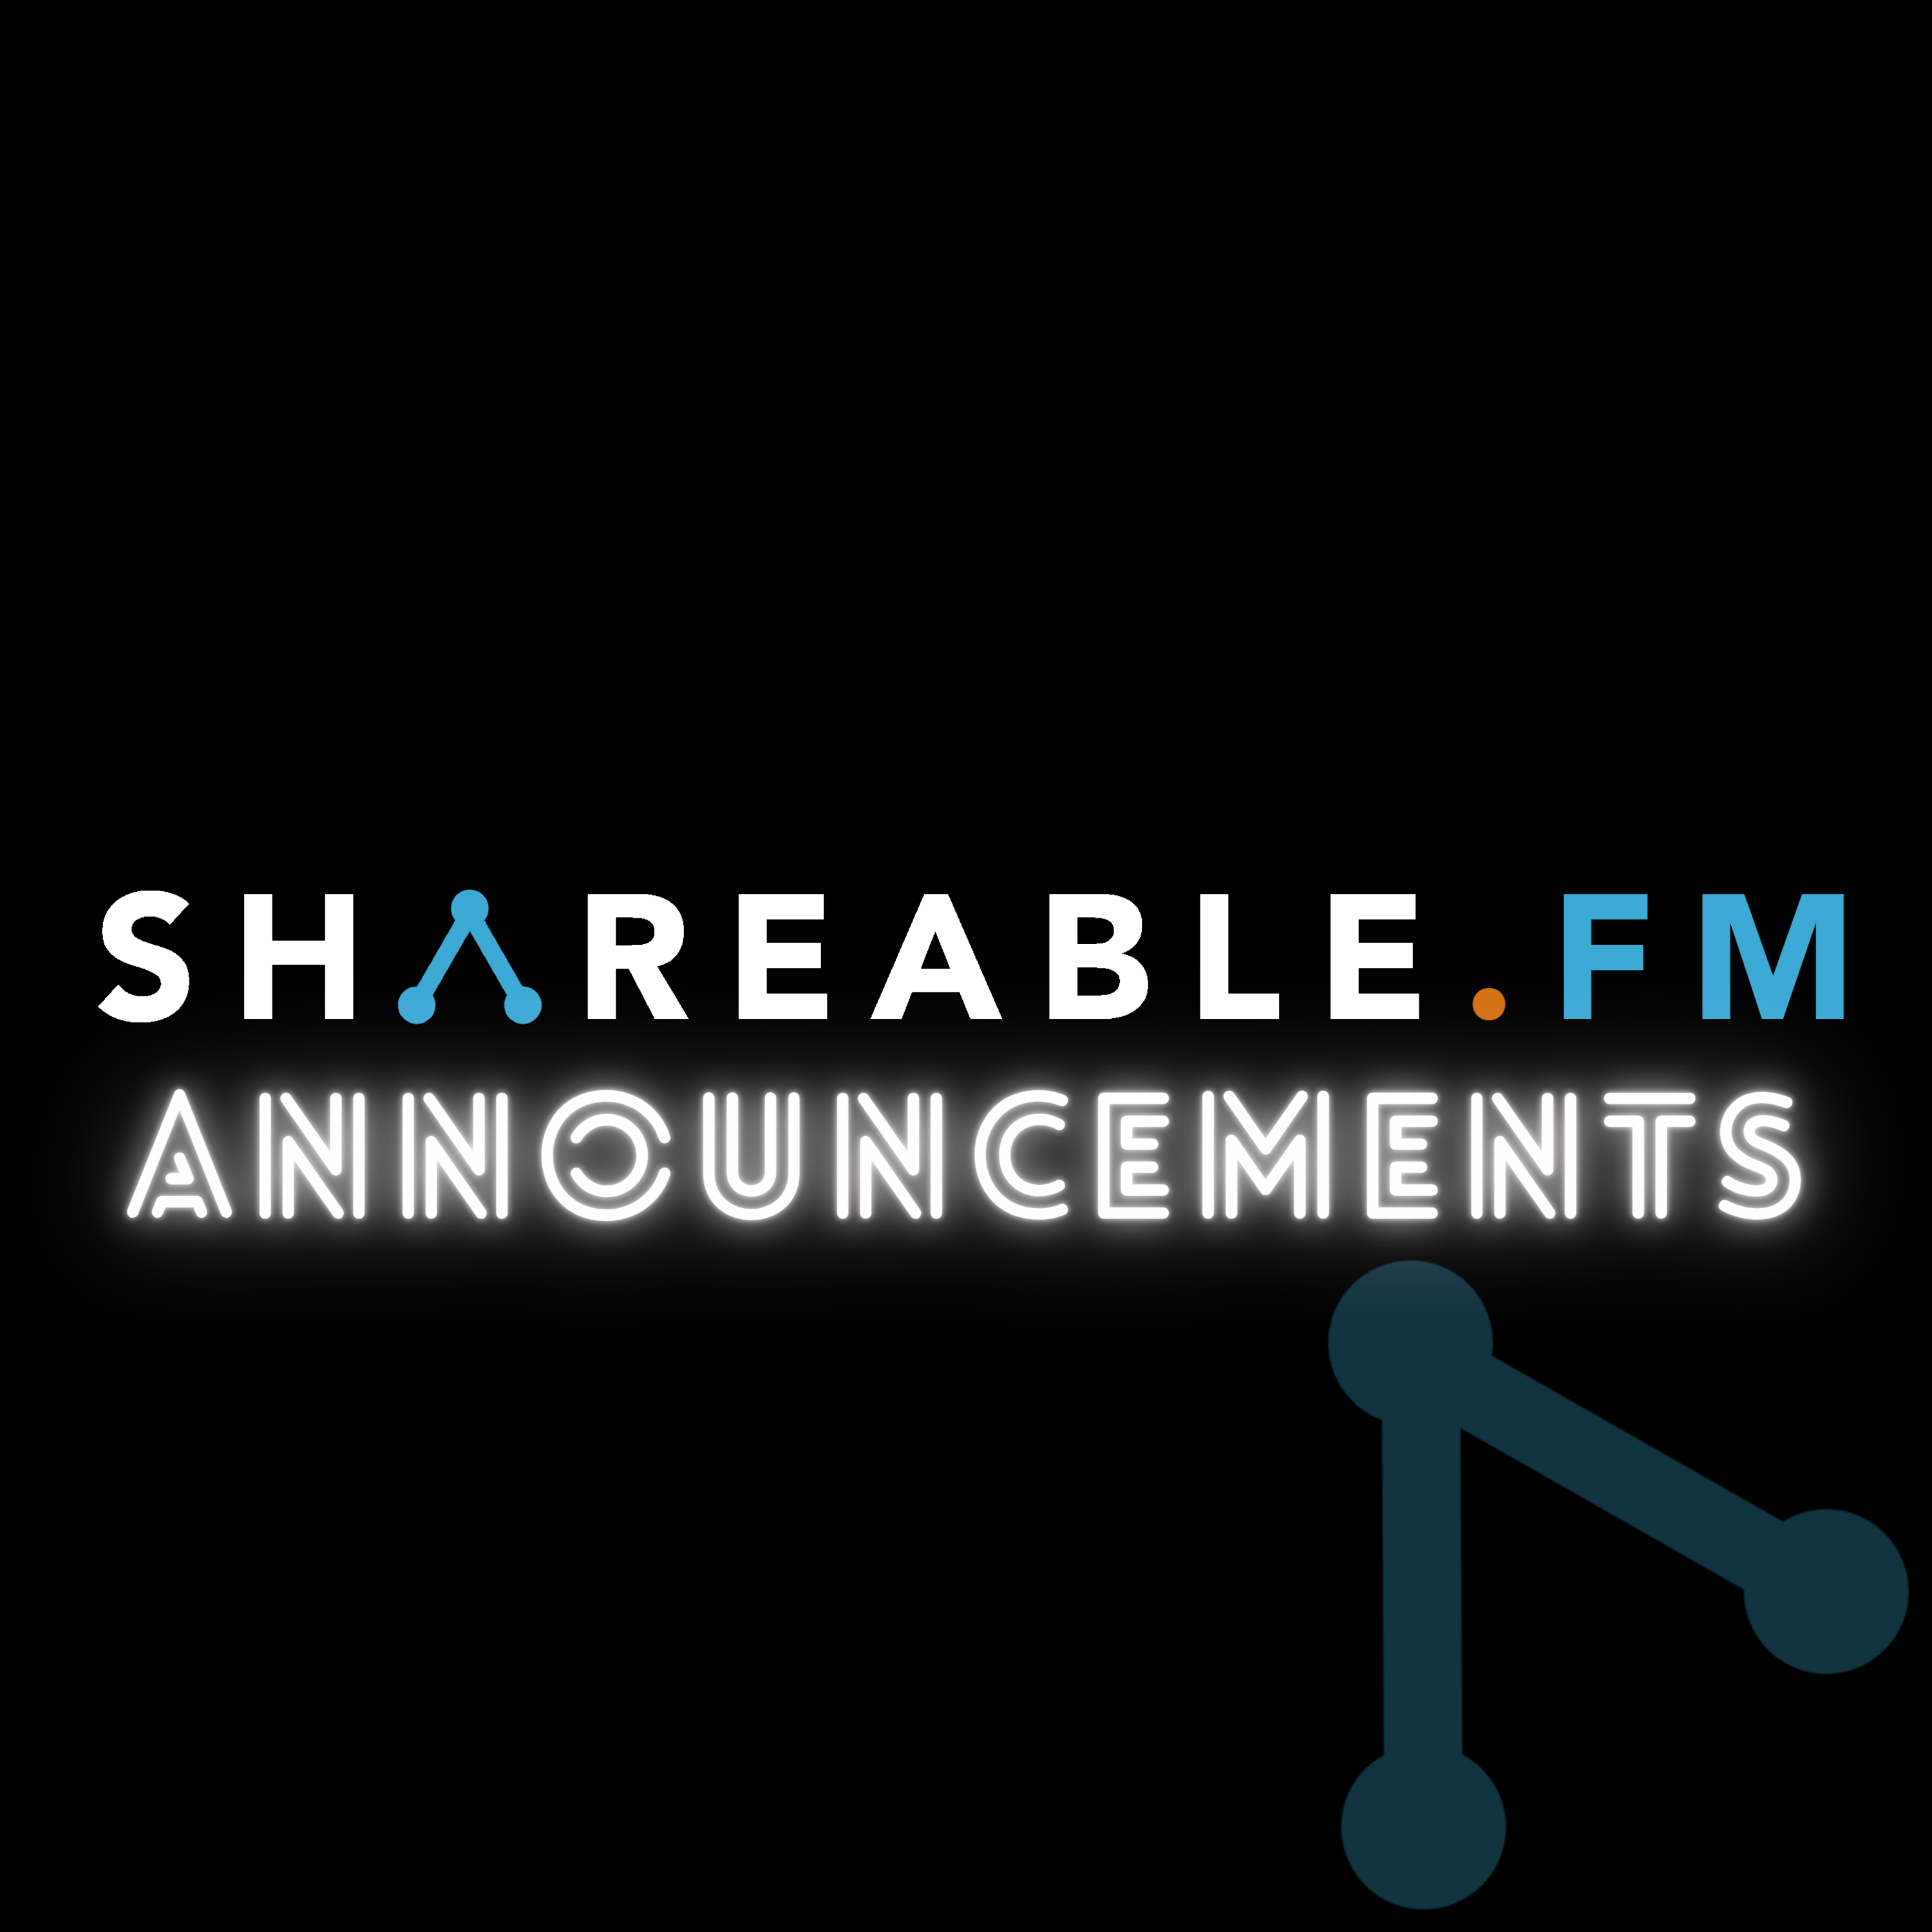 Shareable.fm Announcements